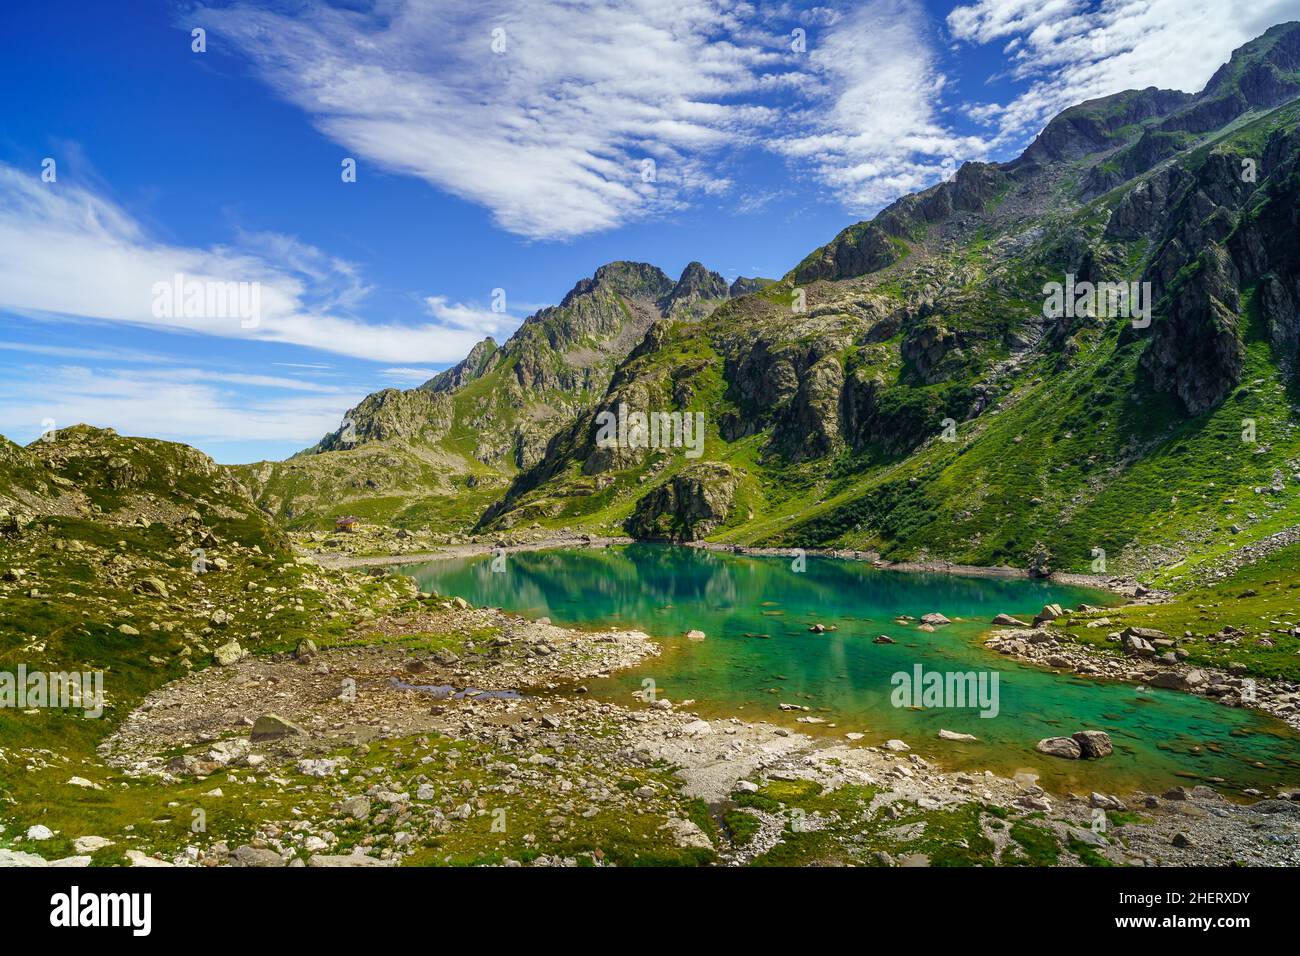 Broca lakes, Alpes Maritimes (Italy) Stock Photo